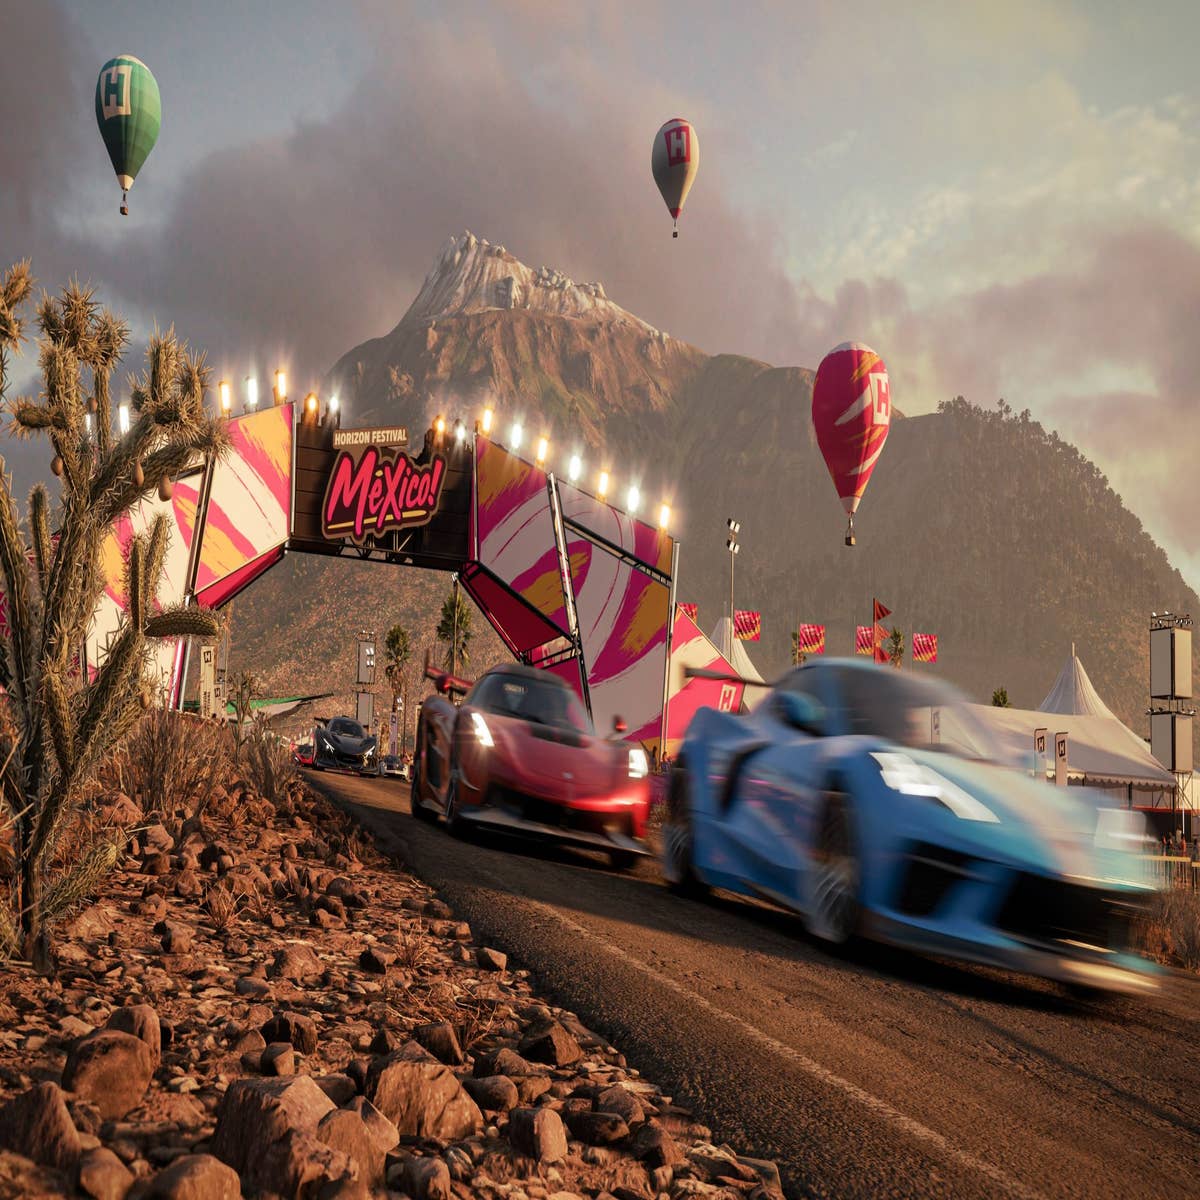 Forza Horizon 5: confira a lista completa de conquistas do novo game